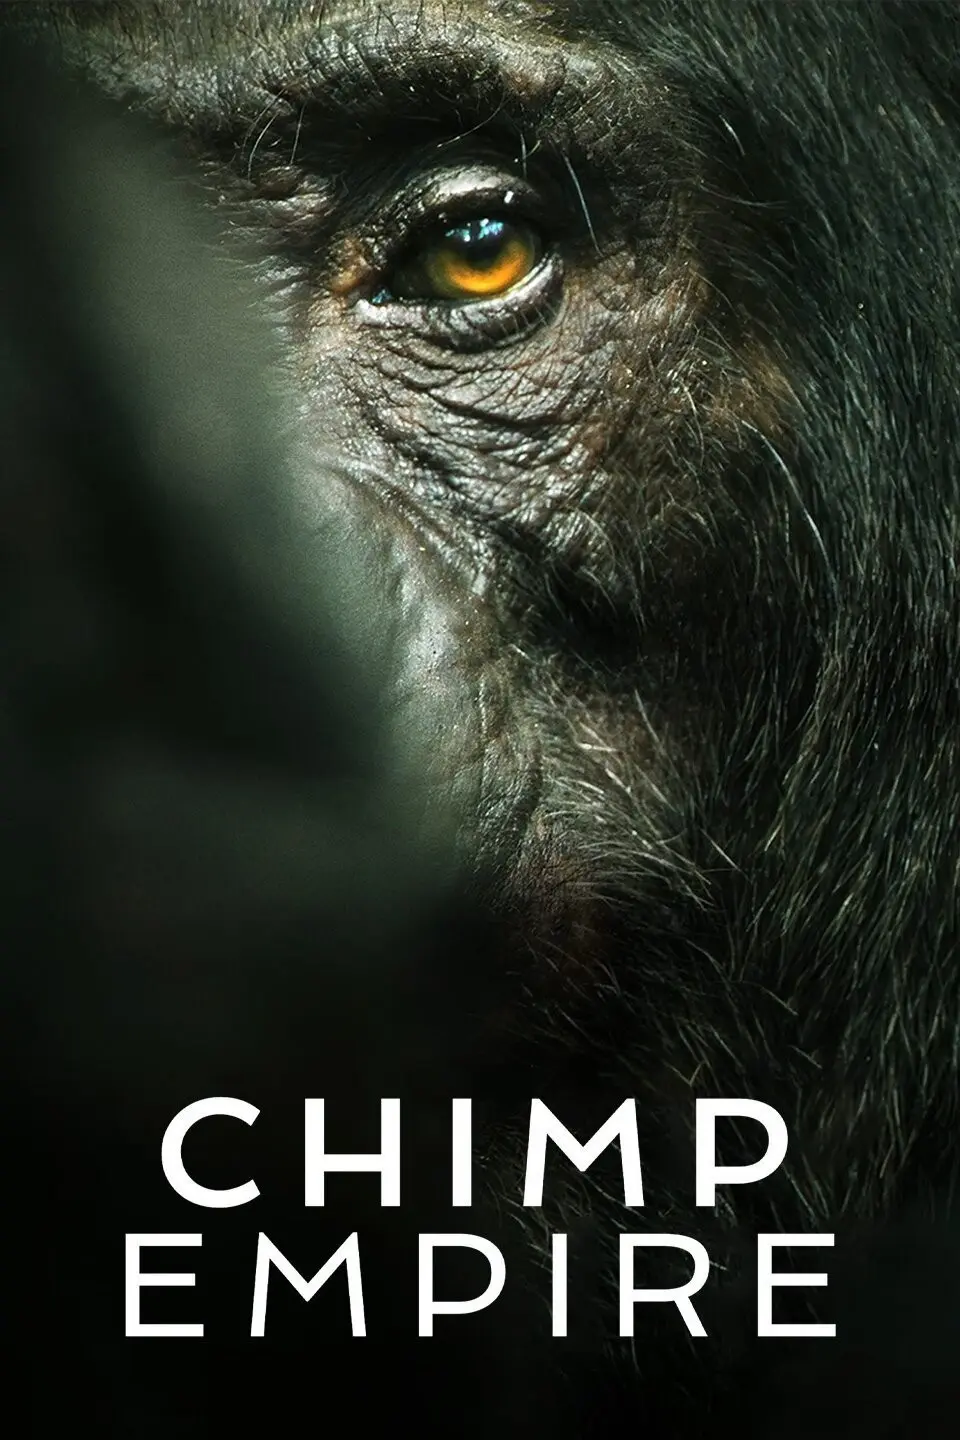 documental de la inteligencia del monos netflix - Cuántos episodios de Chimp Empire hay en Netflix